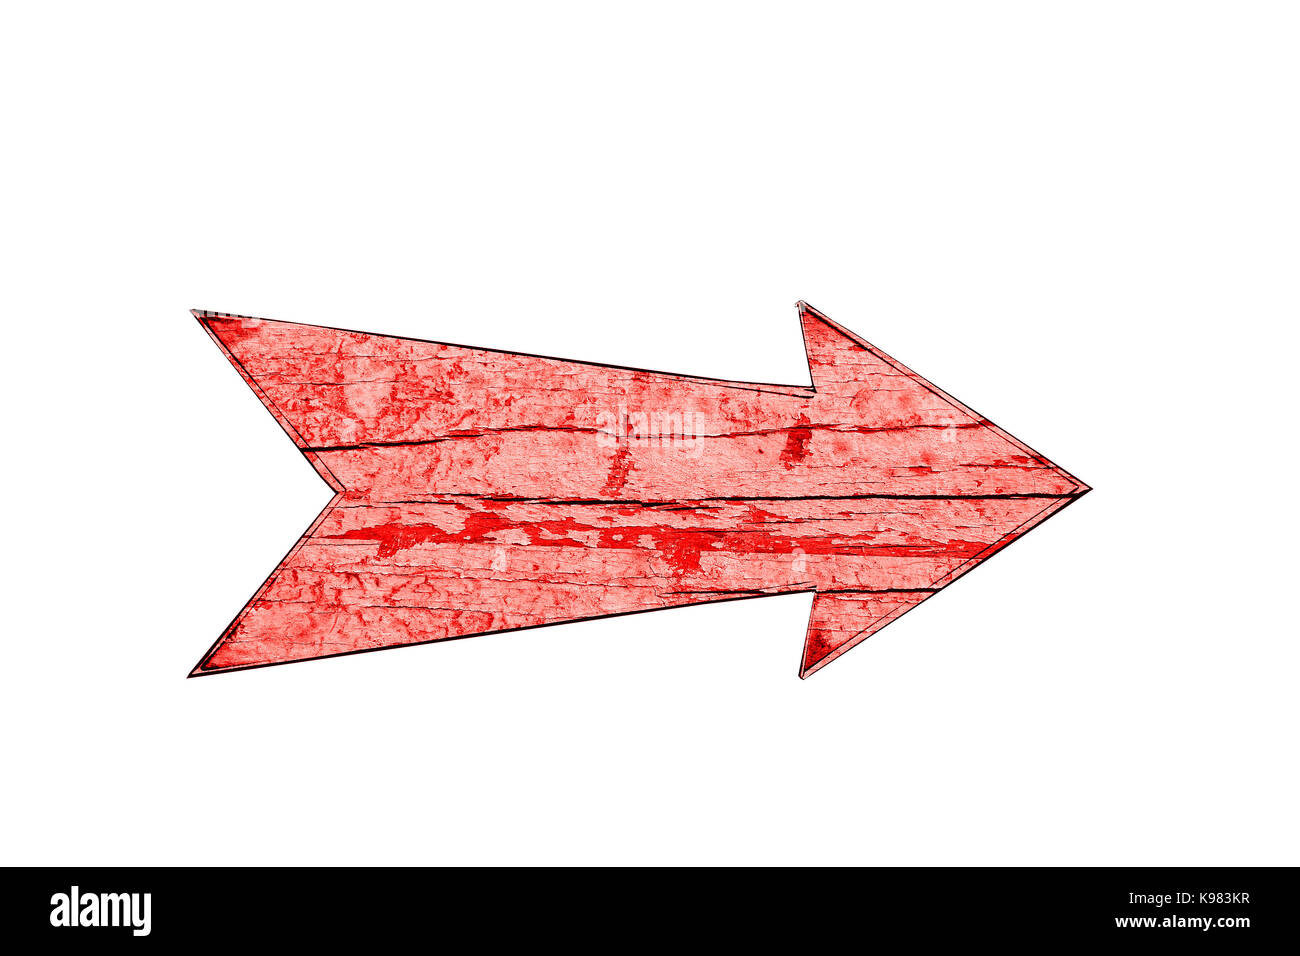 Flèche de direction en bois vintage rouge signe sur la fissuration d'un peeling et plaque en bois de couleur rouge isolé sur un fond blanc vide. Banque D'Images